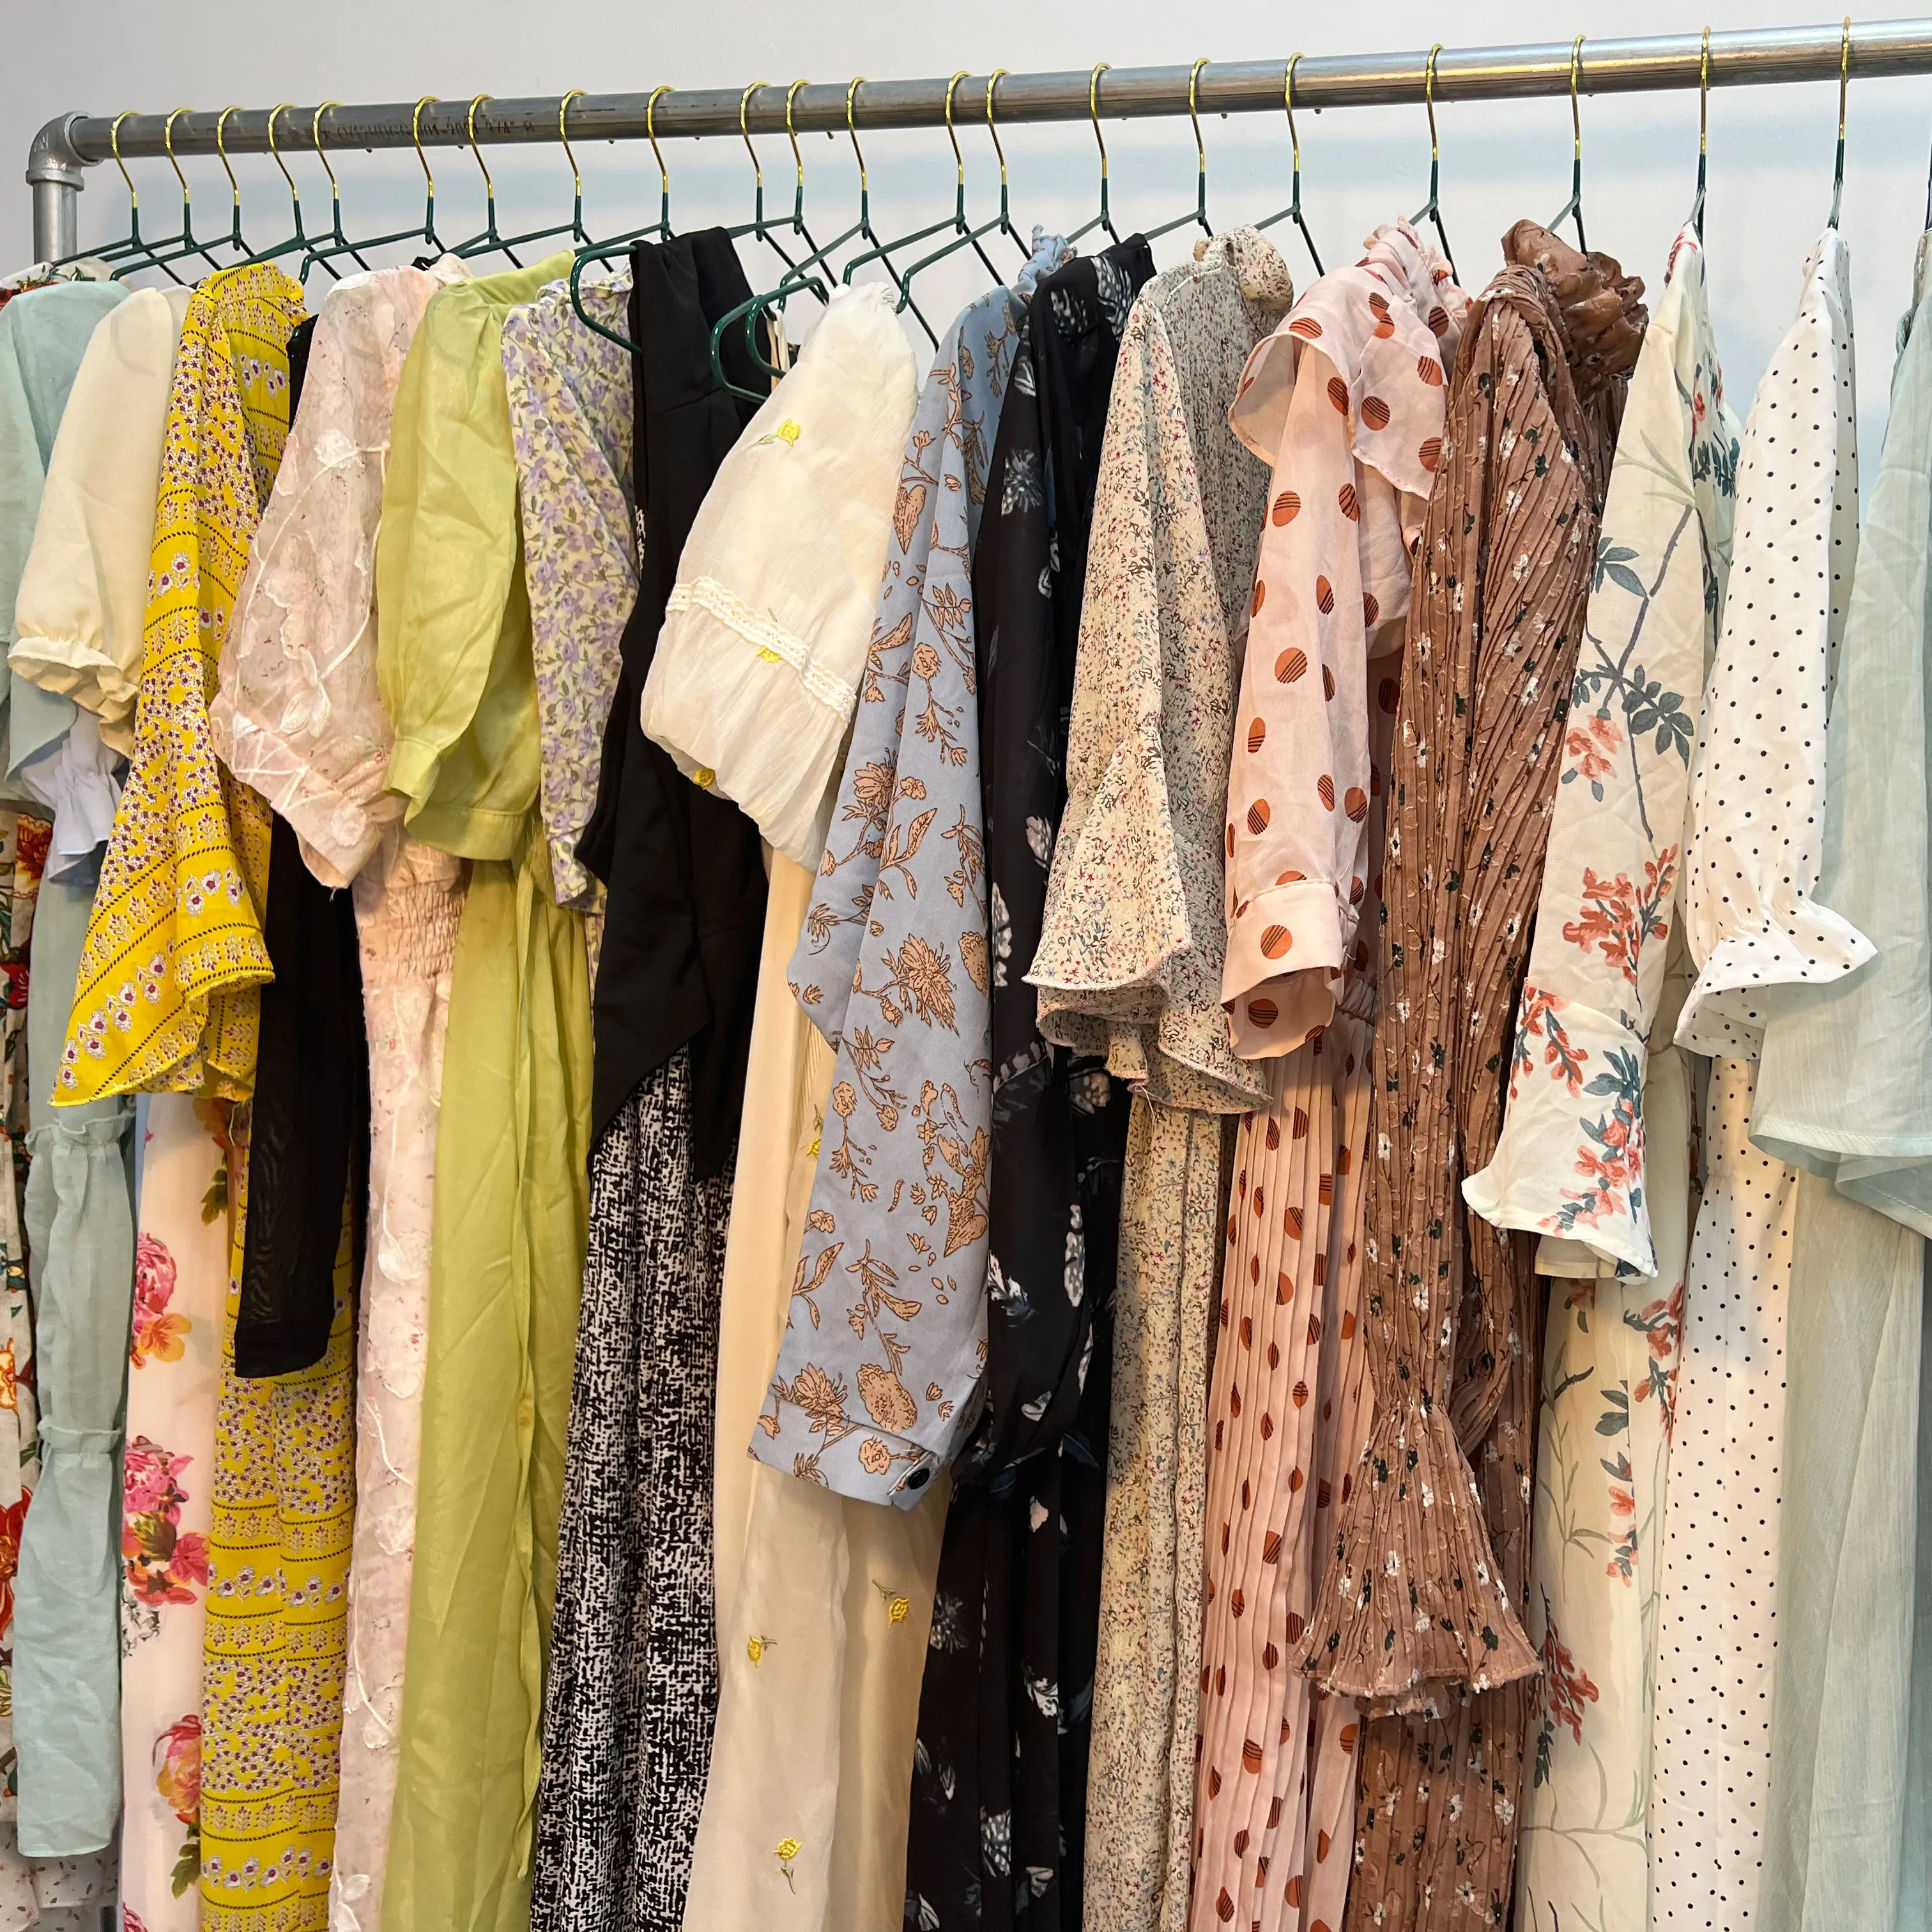 Fábrica preço direto Mulheres Verão Vestidos preço barato mulheres roupas estoque roupas usadas venda a granel Roupas usadas